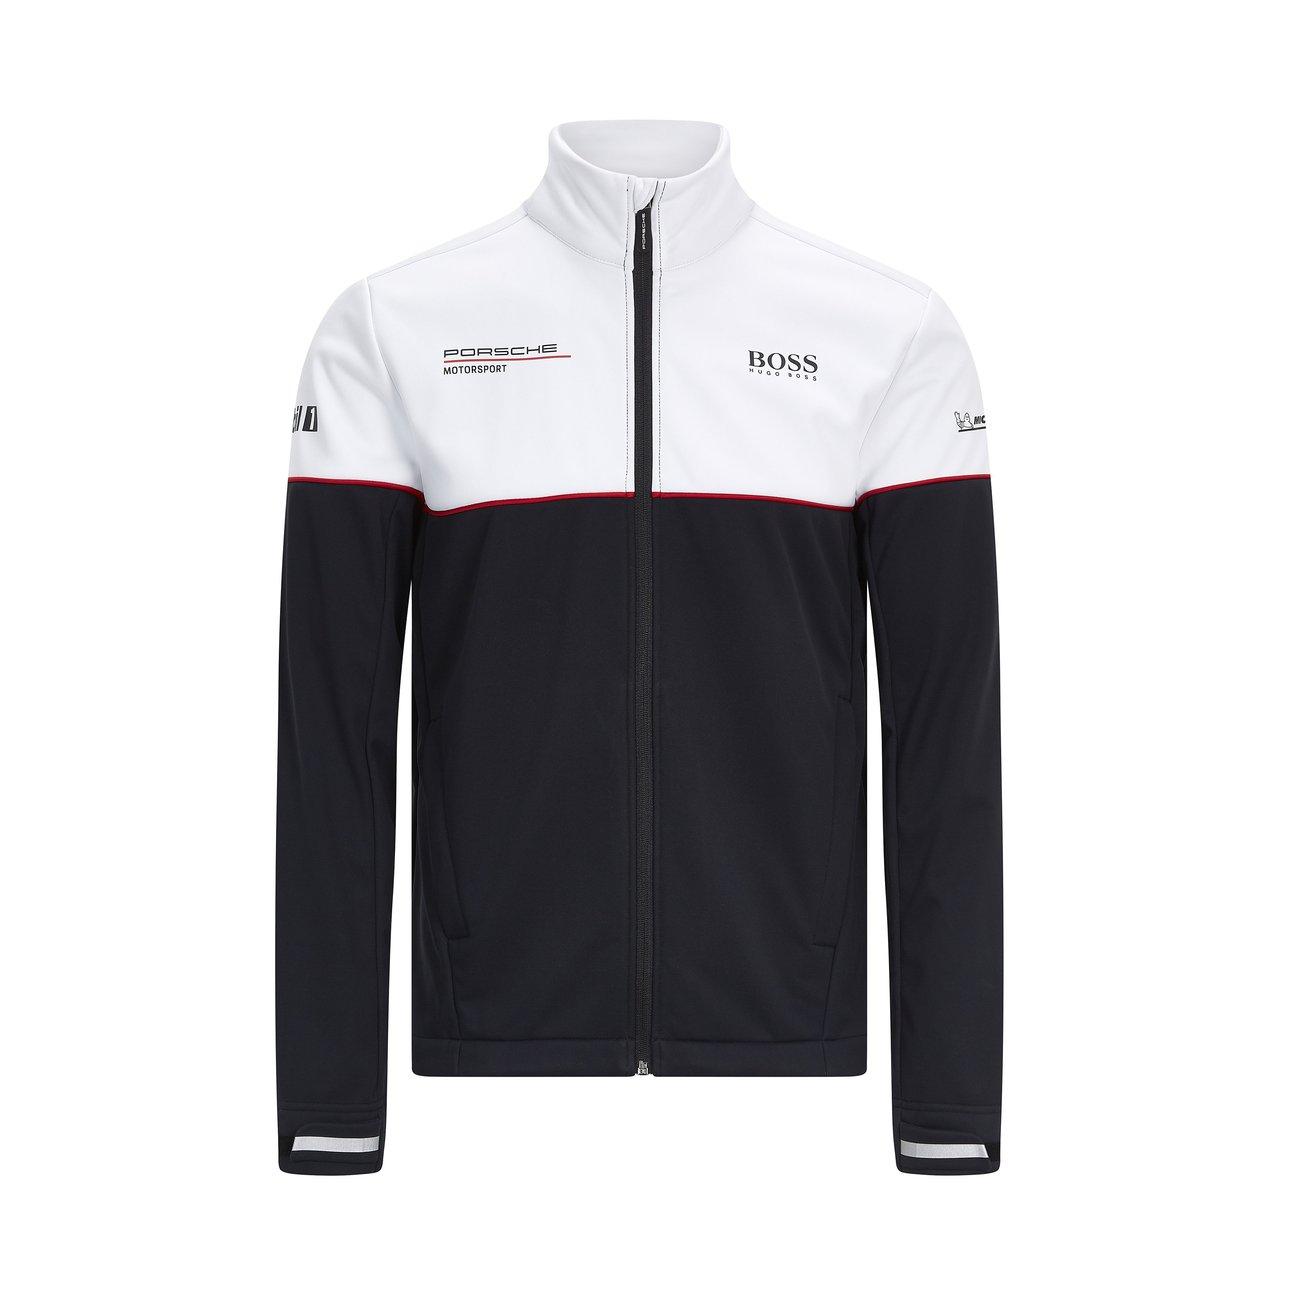 Porsche unisex windbreaker jacket